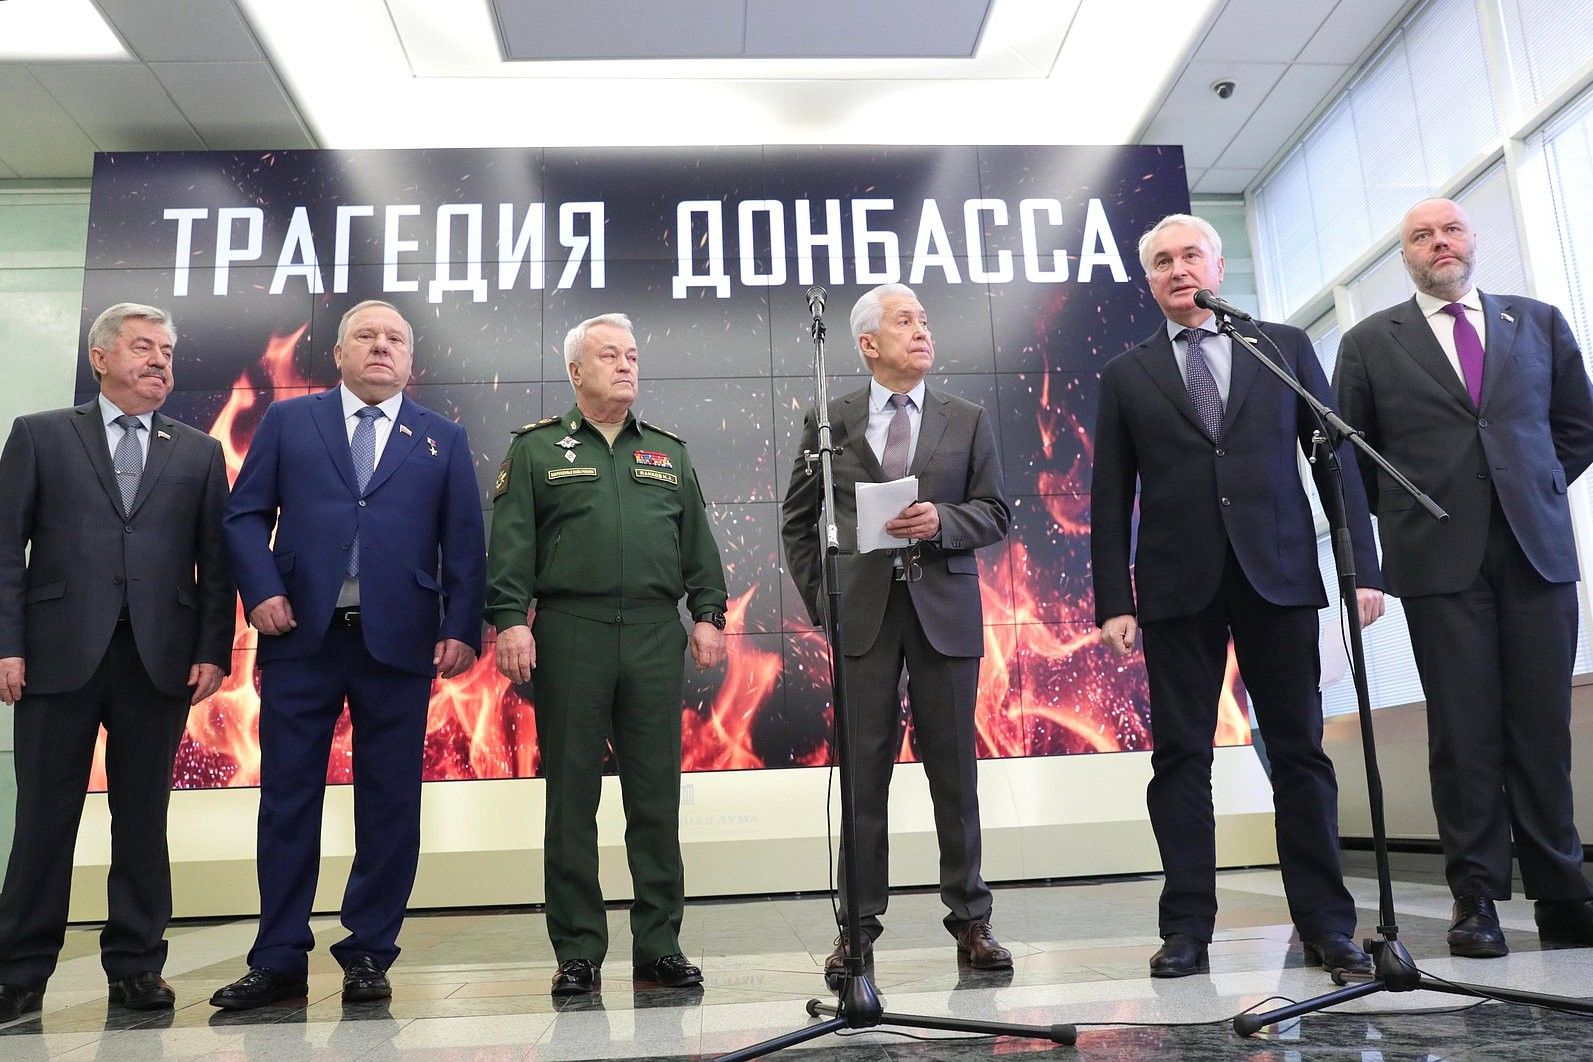 Міноборони Росії показало кадри зруйнованого Донбасу, Гармаш відреагував: "Звіт про виконану роботу"